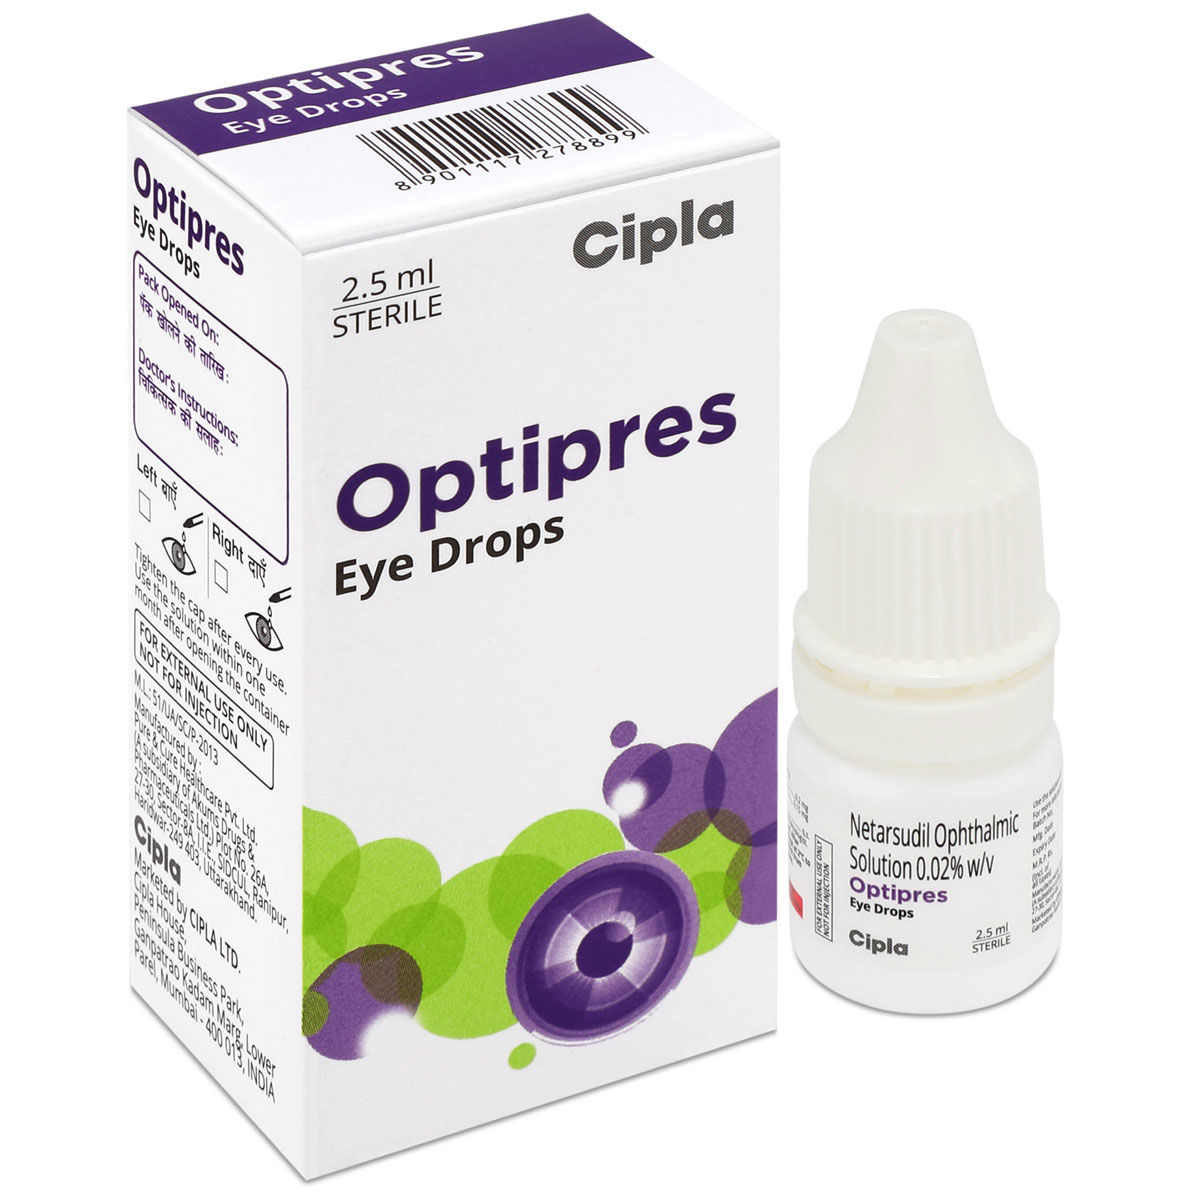 Buy Optipres Eye Drops 2.5 ml Online